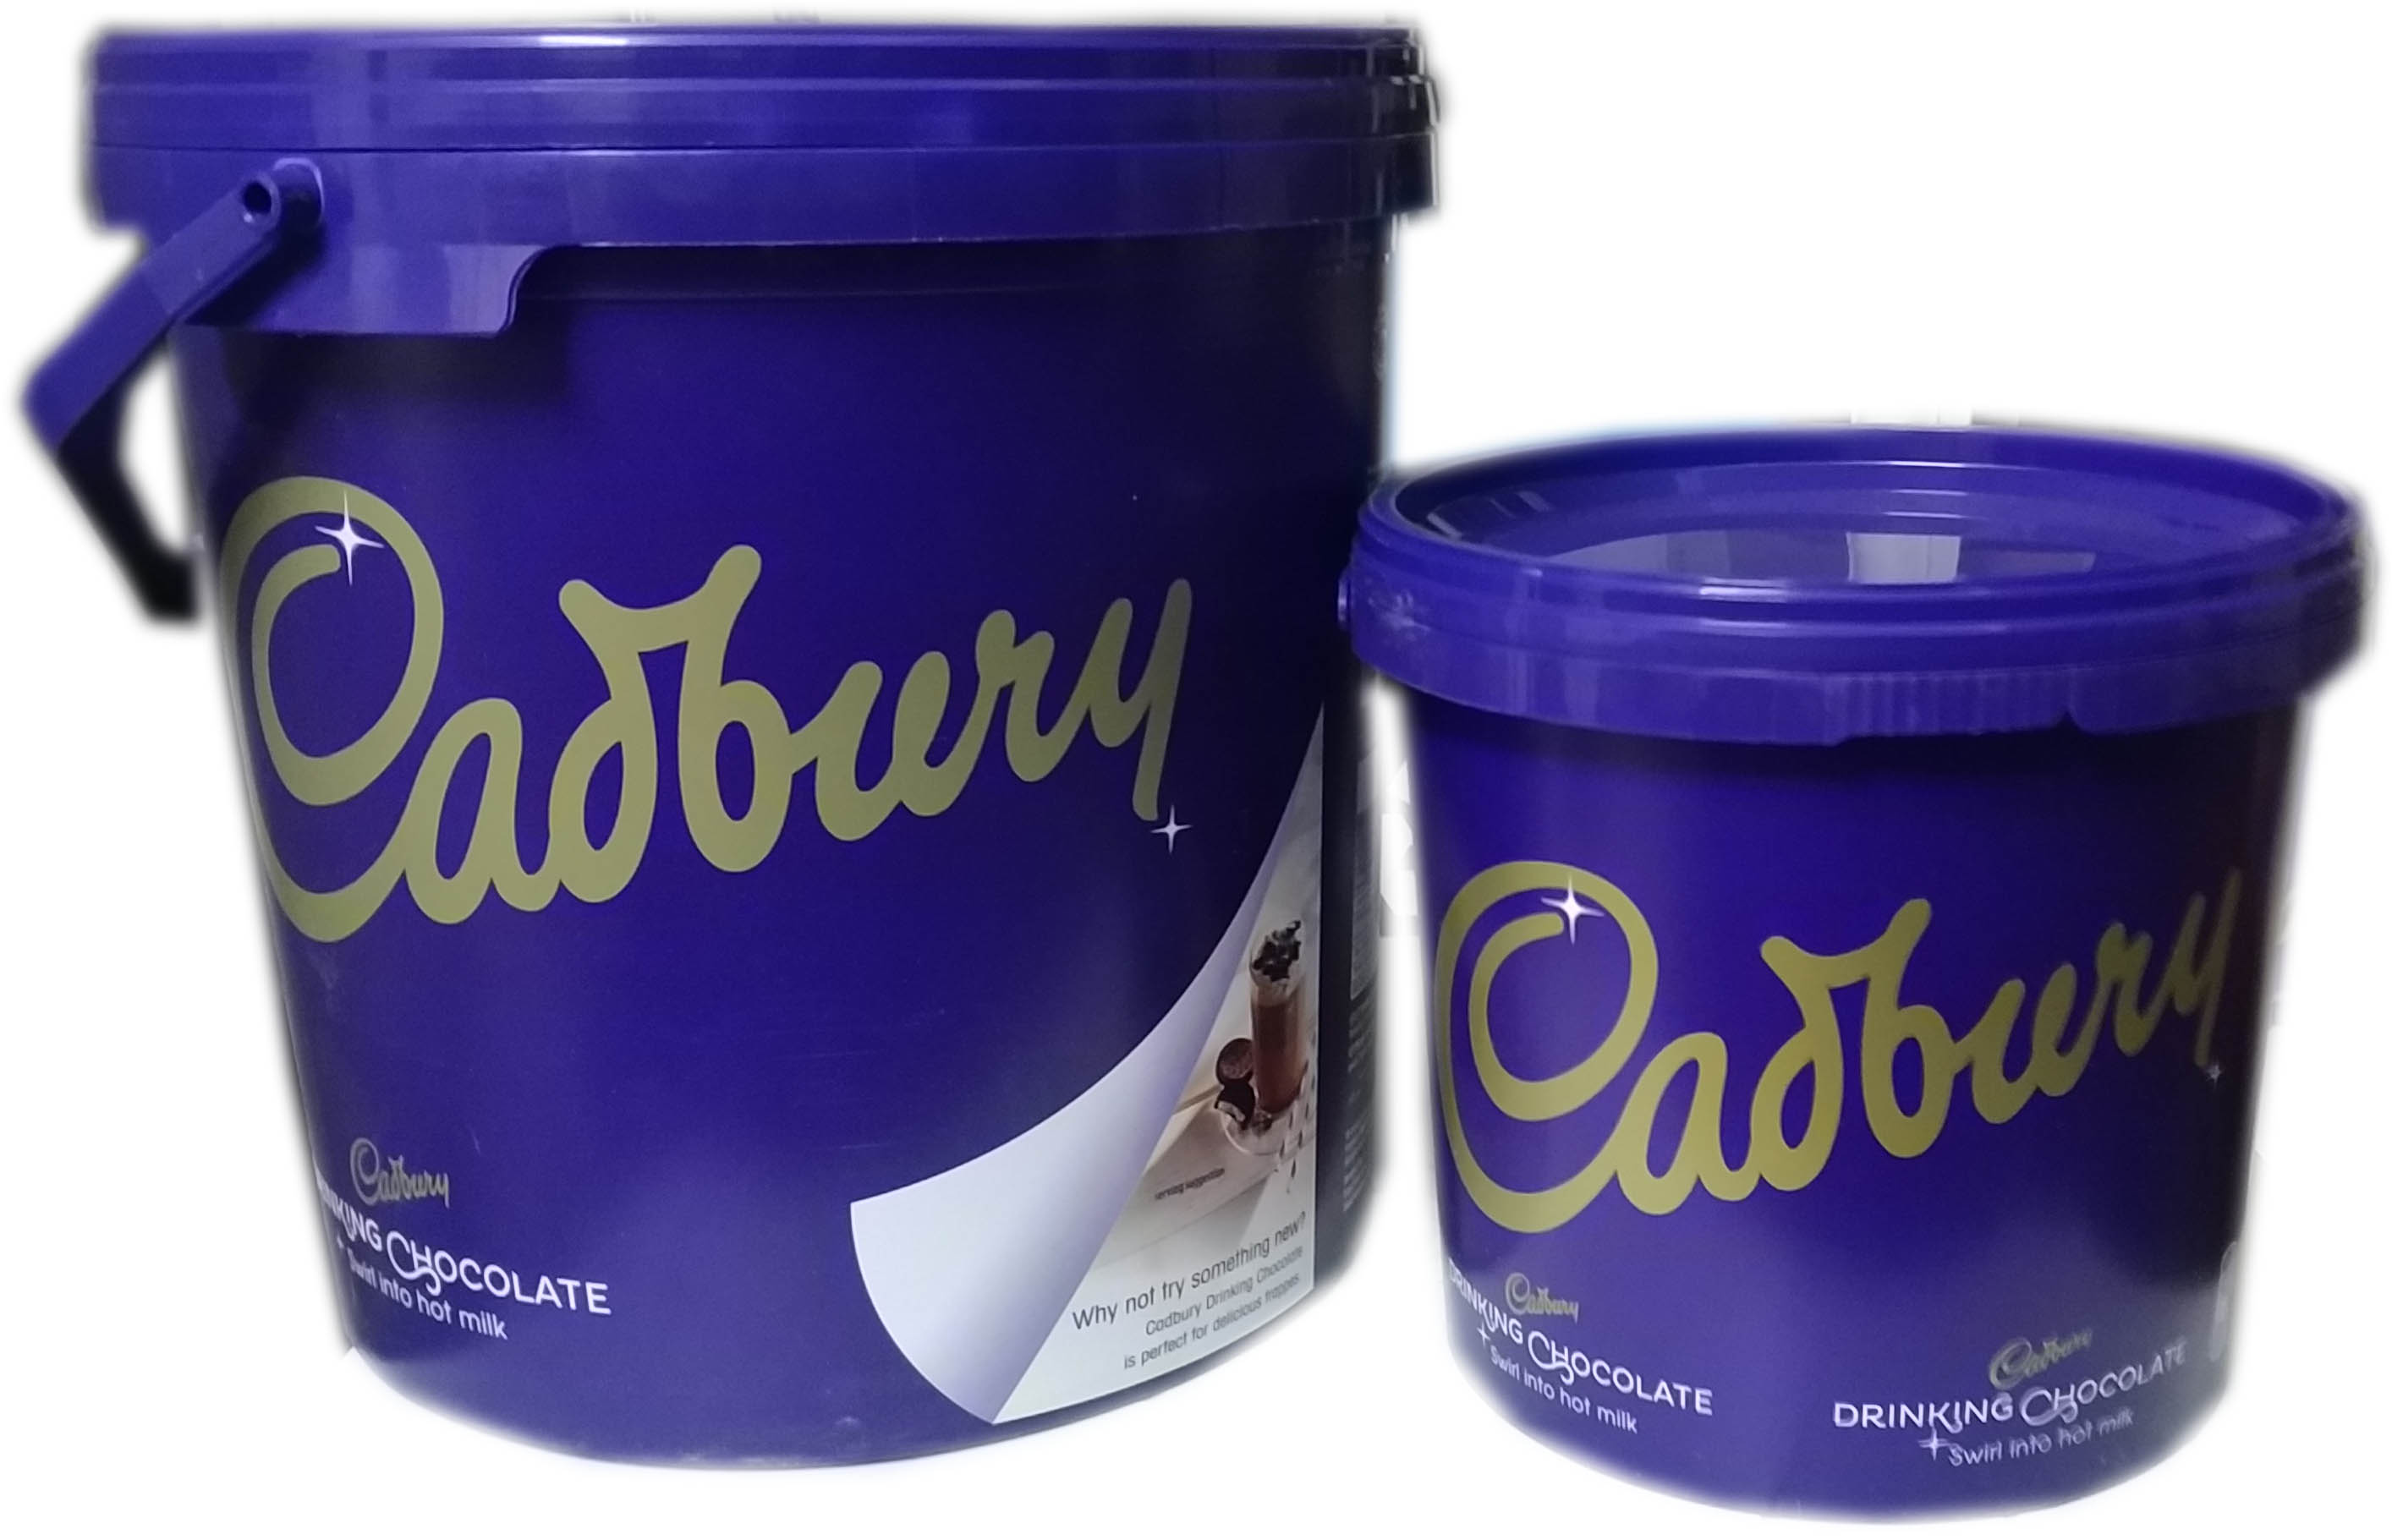 Σοκολάτα Cadbury's 5kg, 2,5kg